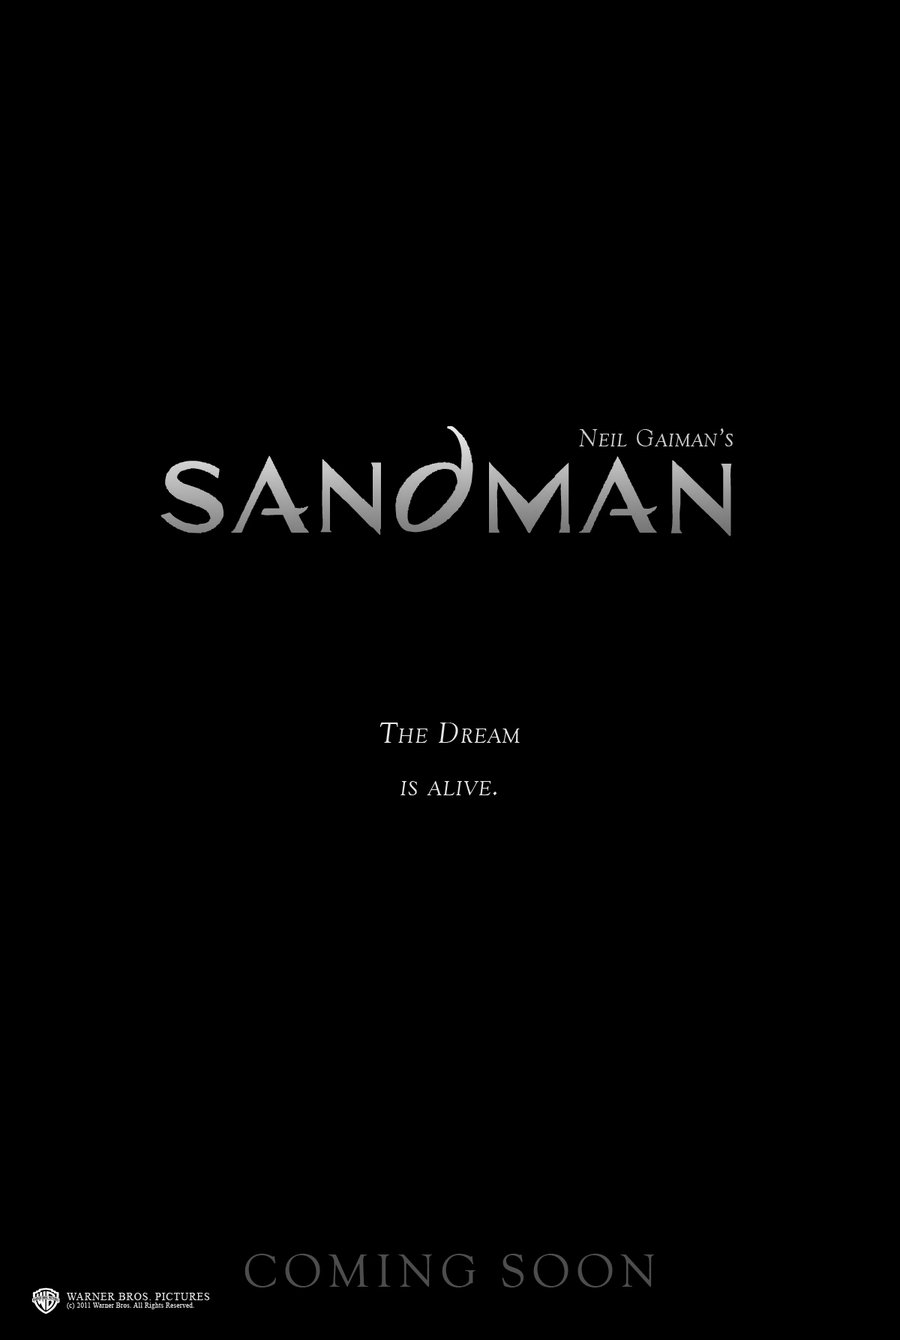 Sandman Movie Poster By Rafaelaveiro